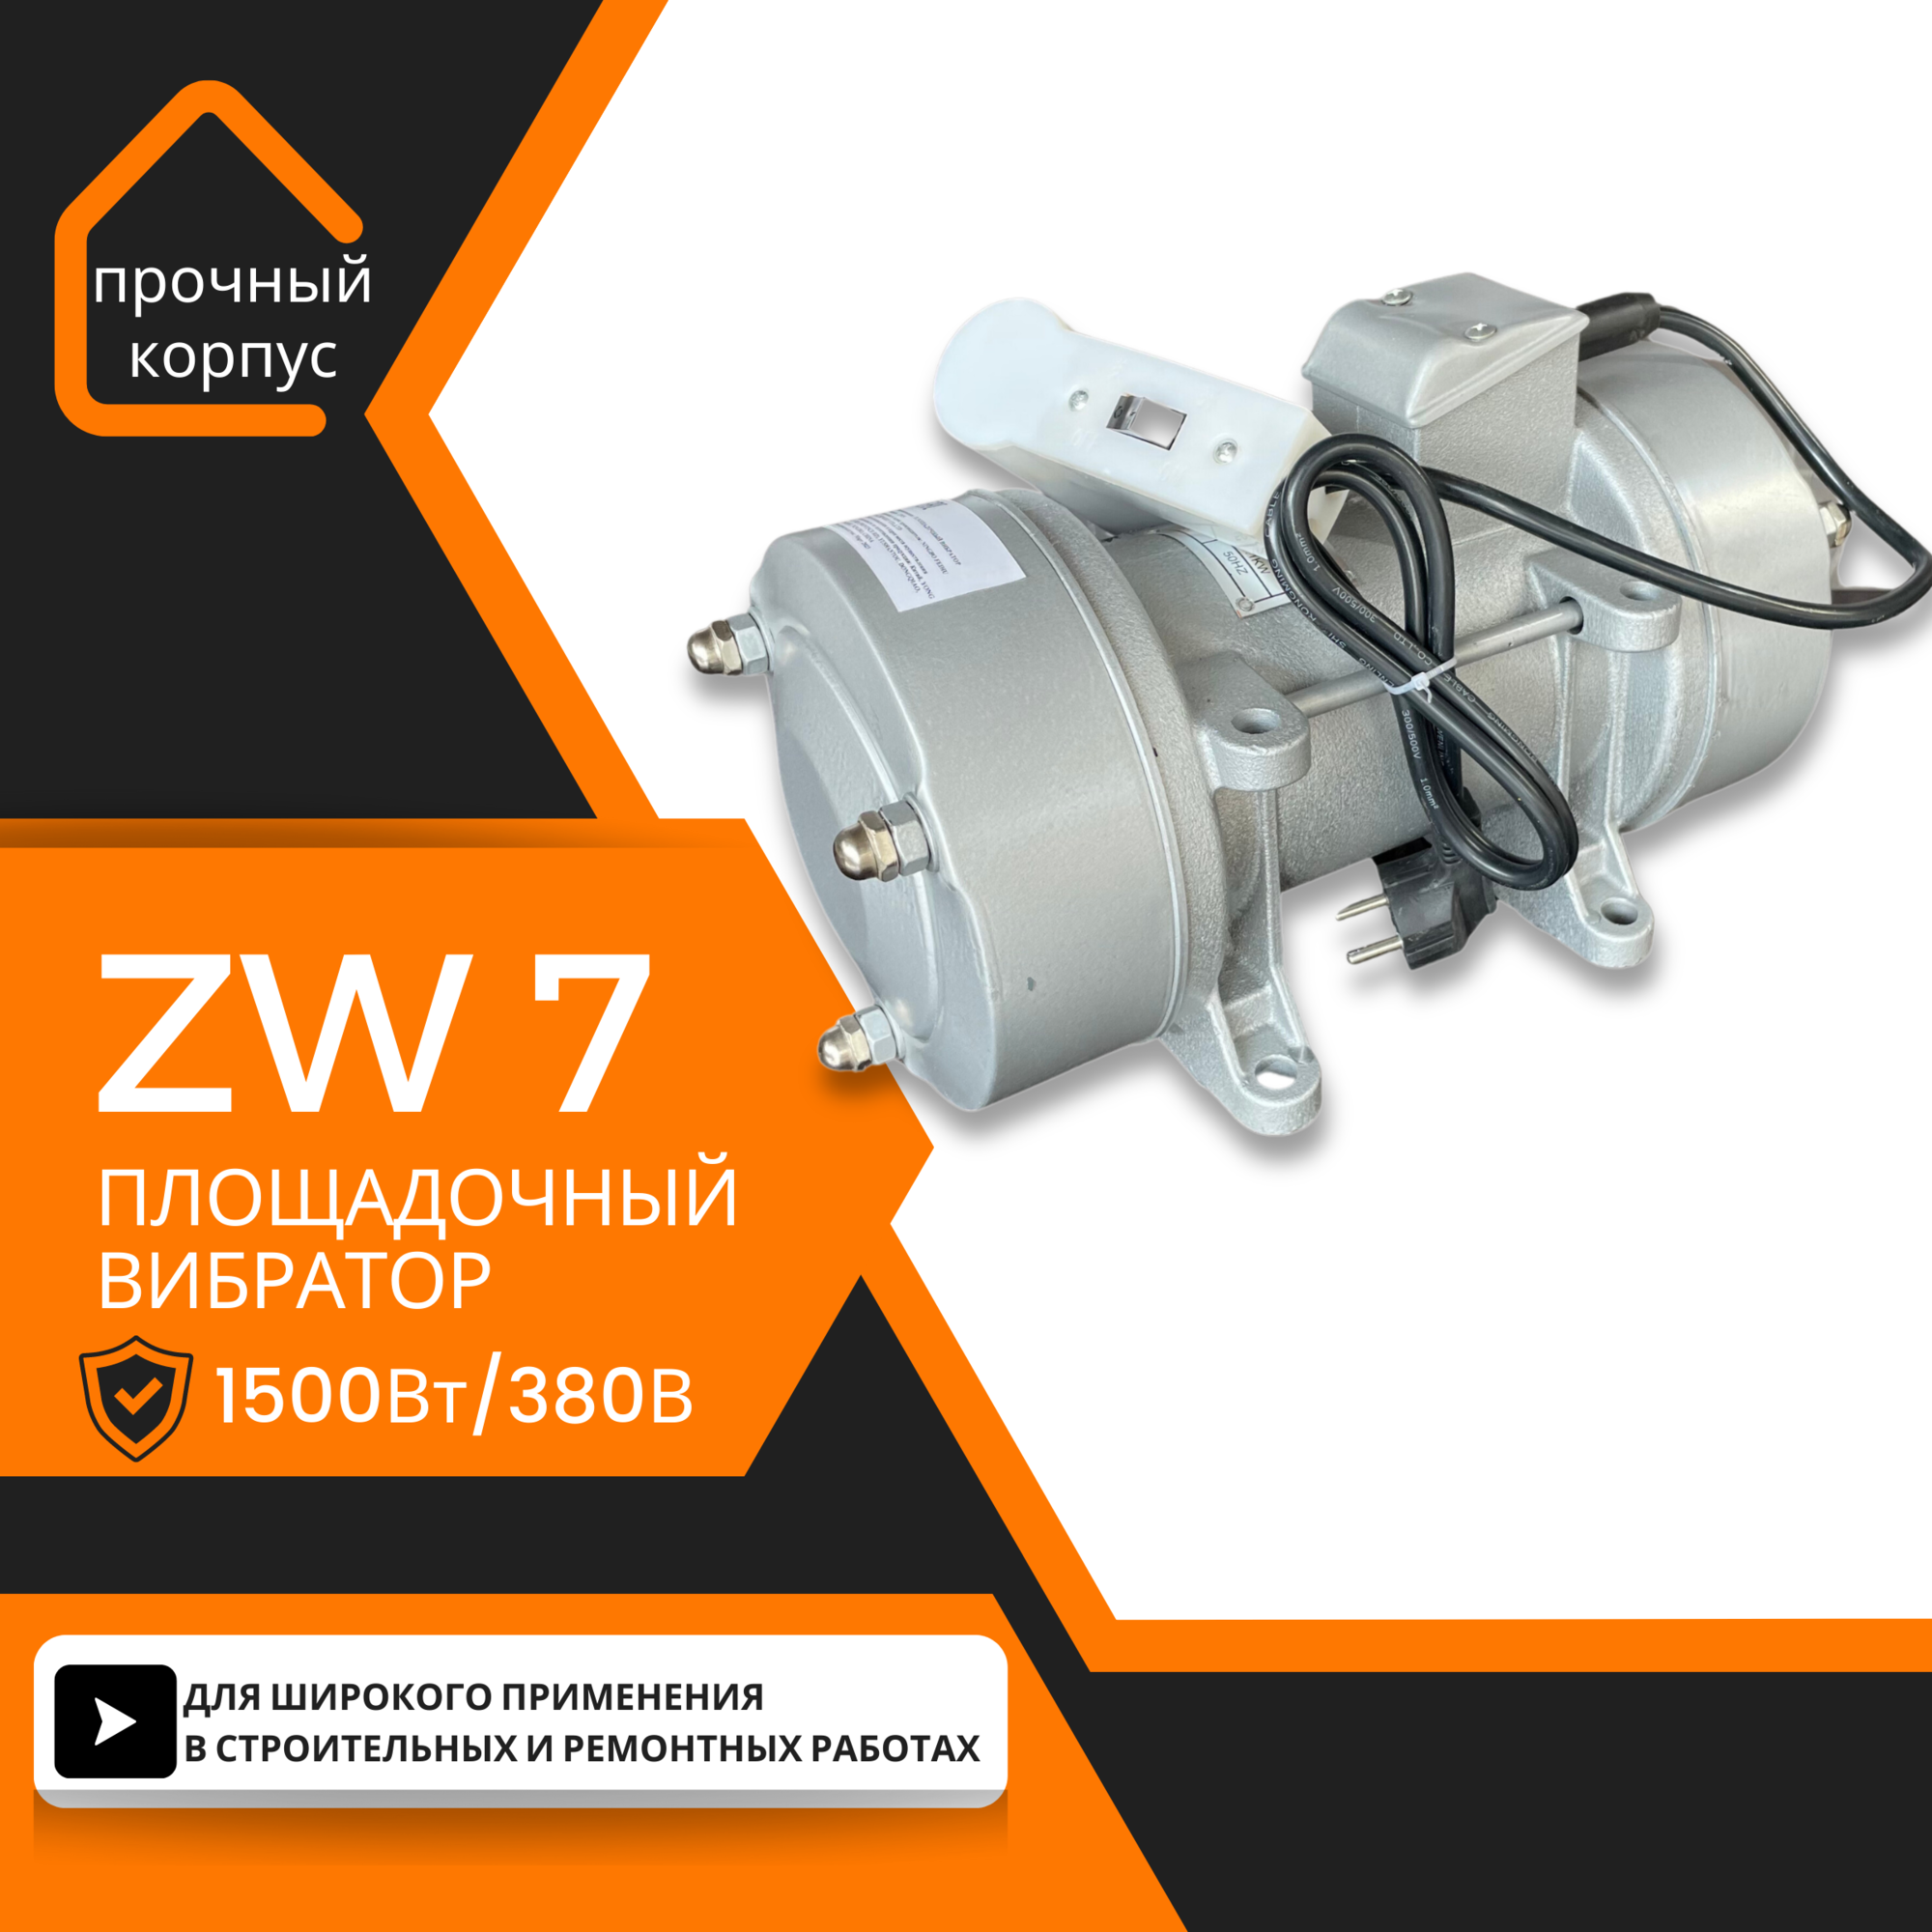 Площадочный вибратор TeaM ZW 7 (1500Вт/ 380В)